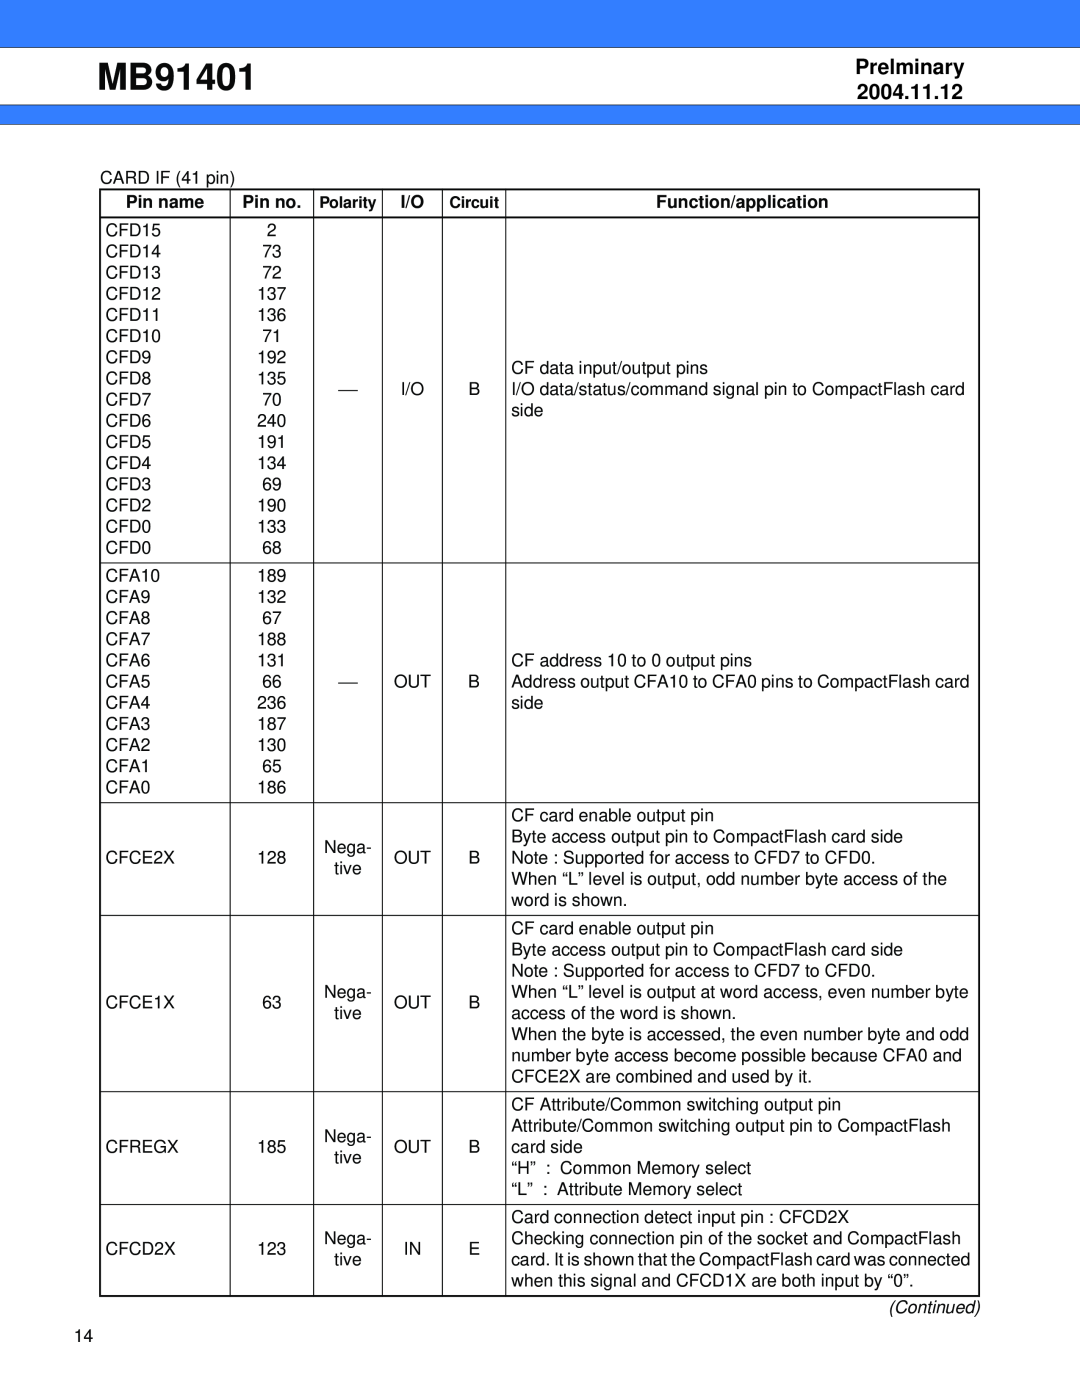 Fujitsu MB91401 manual Prelminary, 2004.11.12, Pin name, Pin no, Function/application 